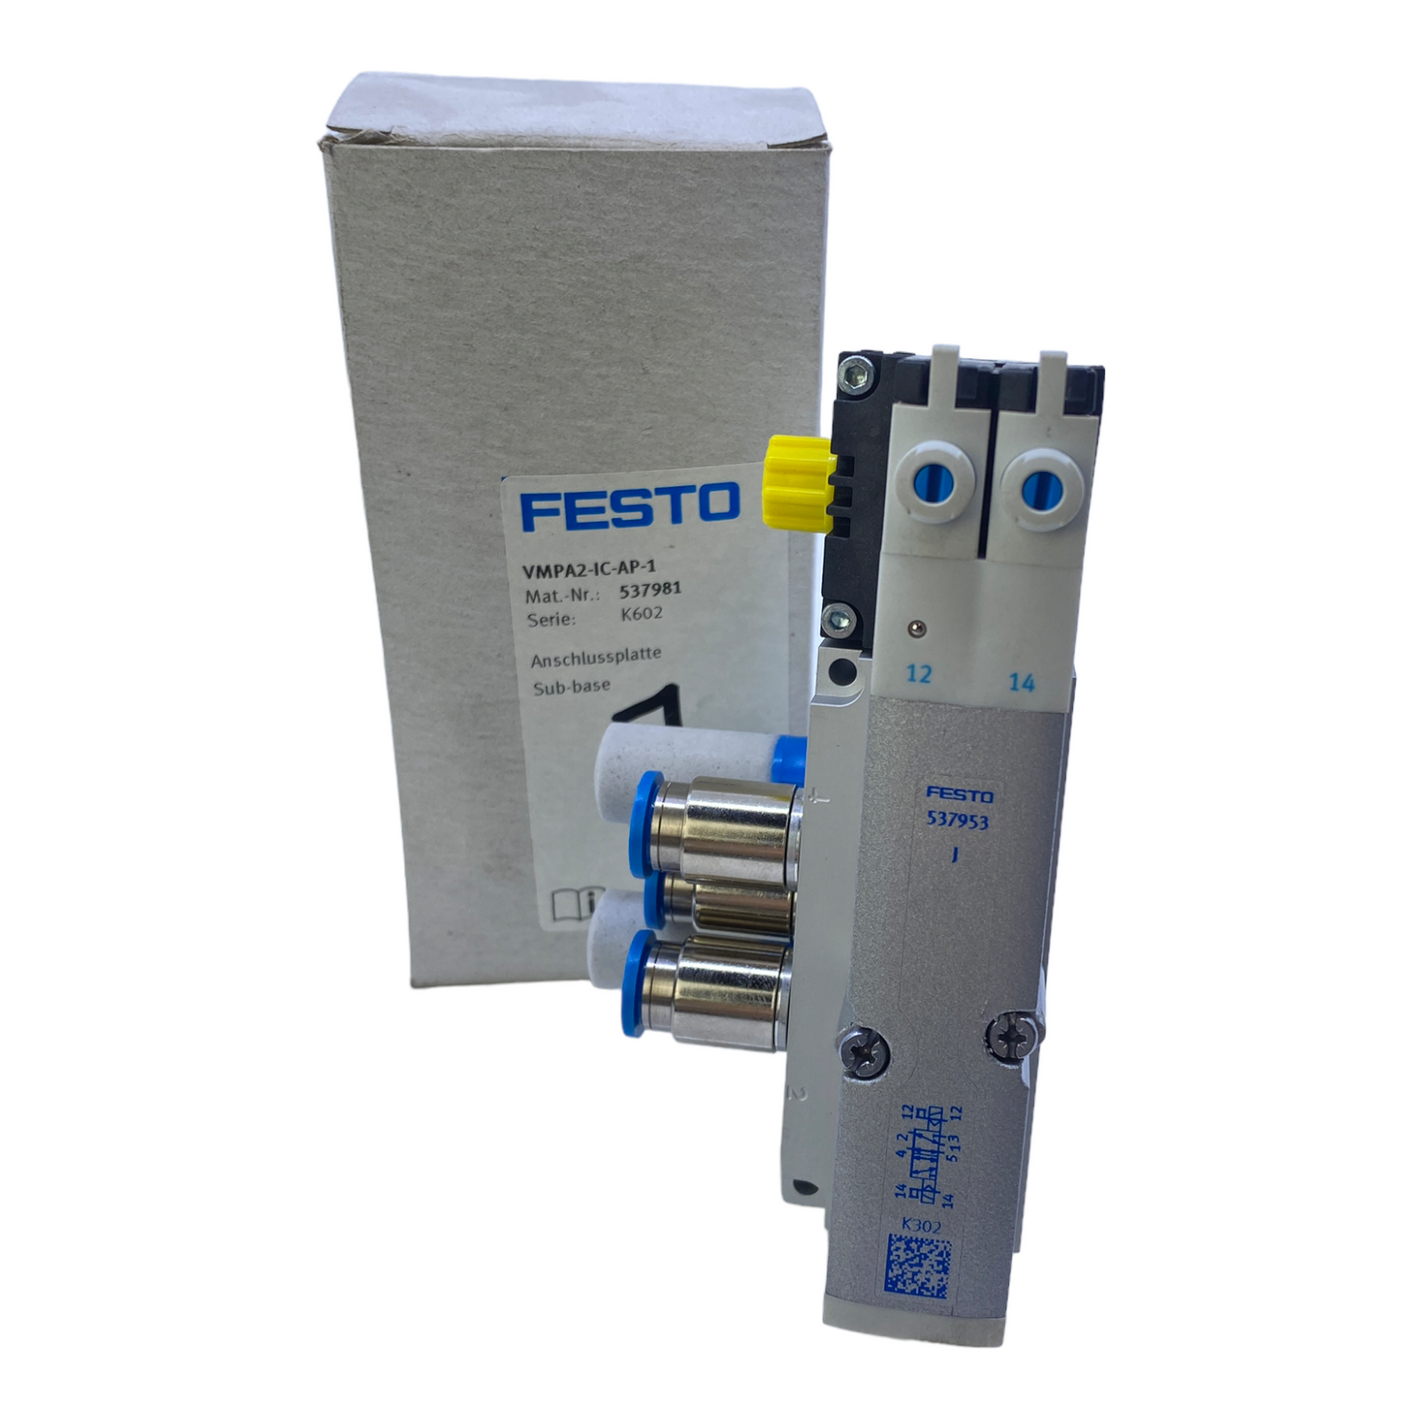 Festo VMPA2-IC-AP-1 Anschlussplatte 537981 3 bis 8 bar